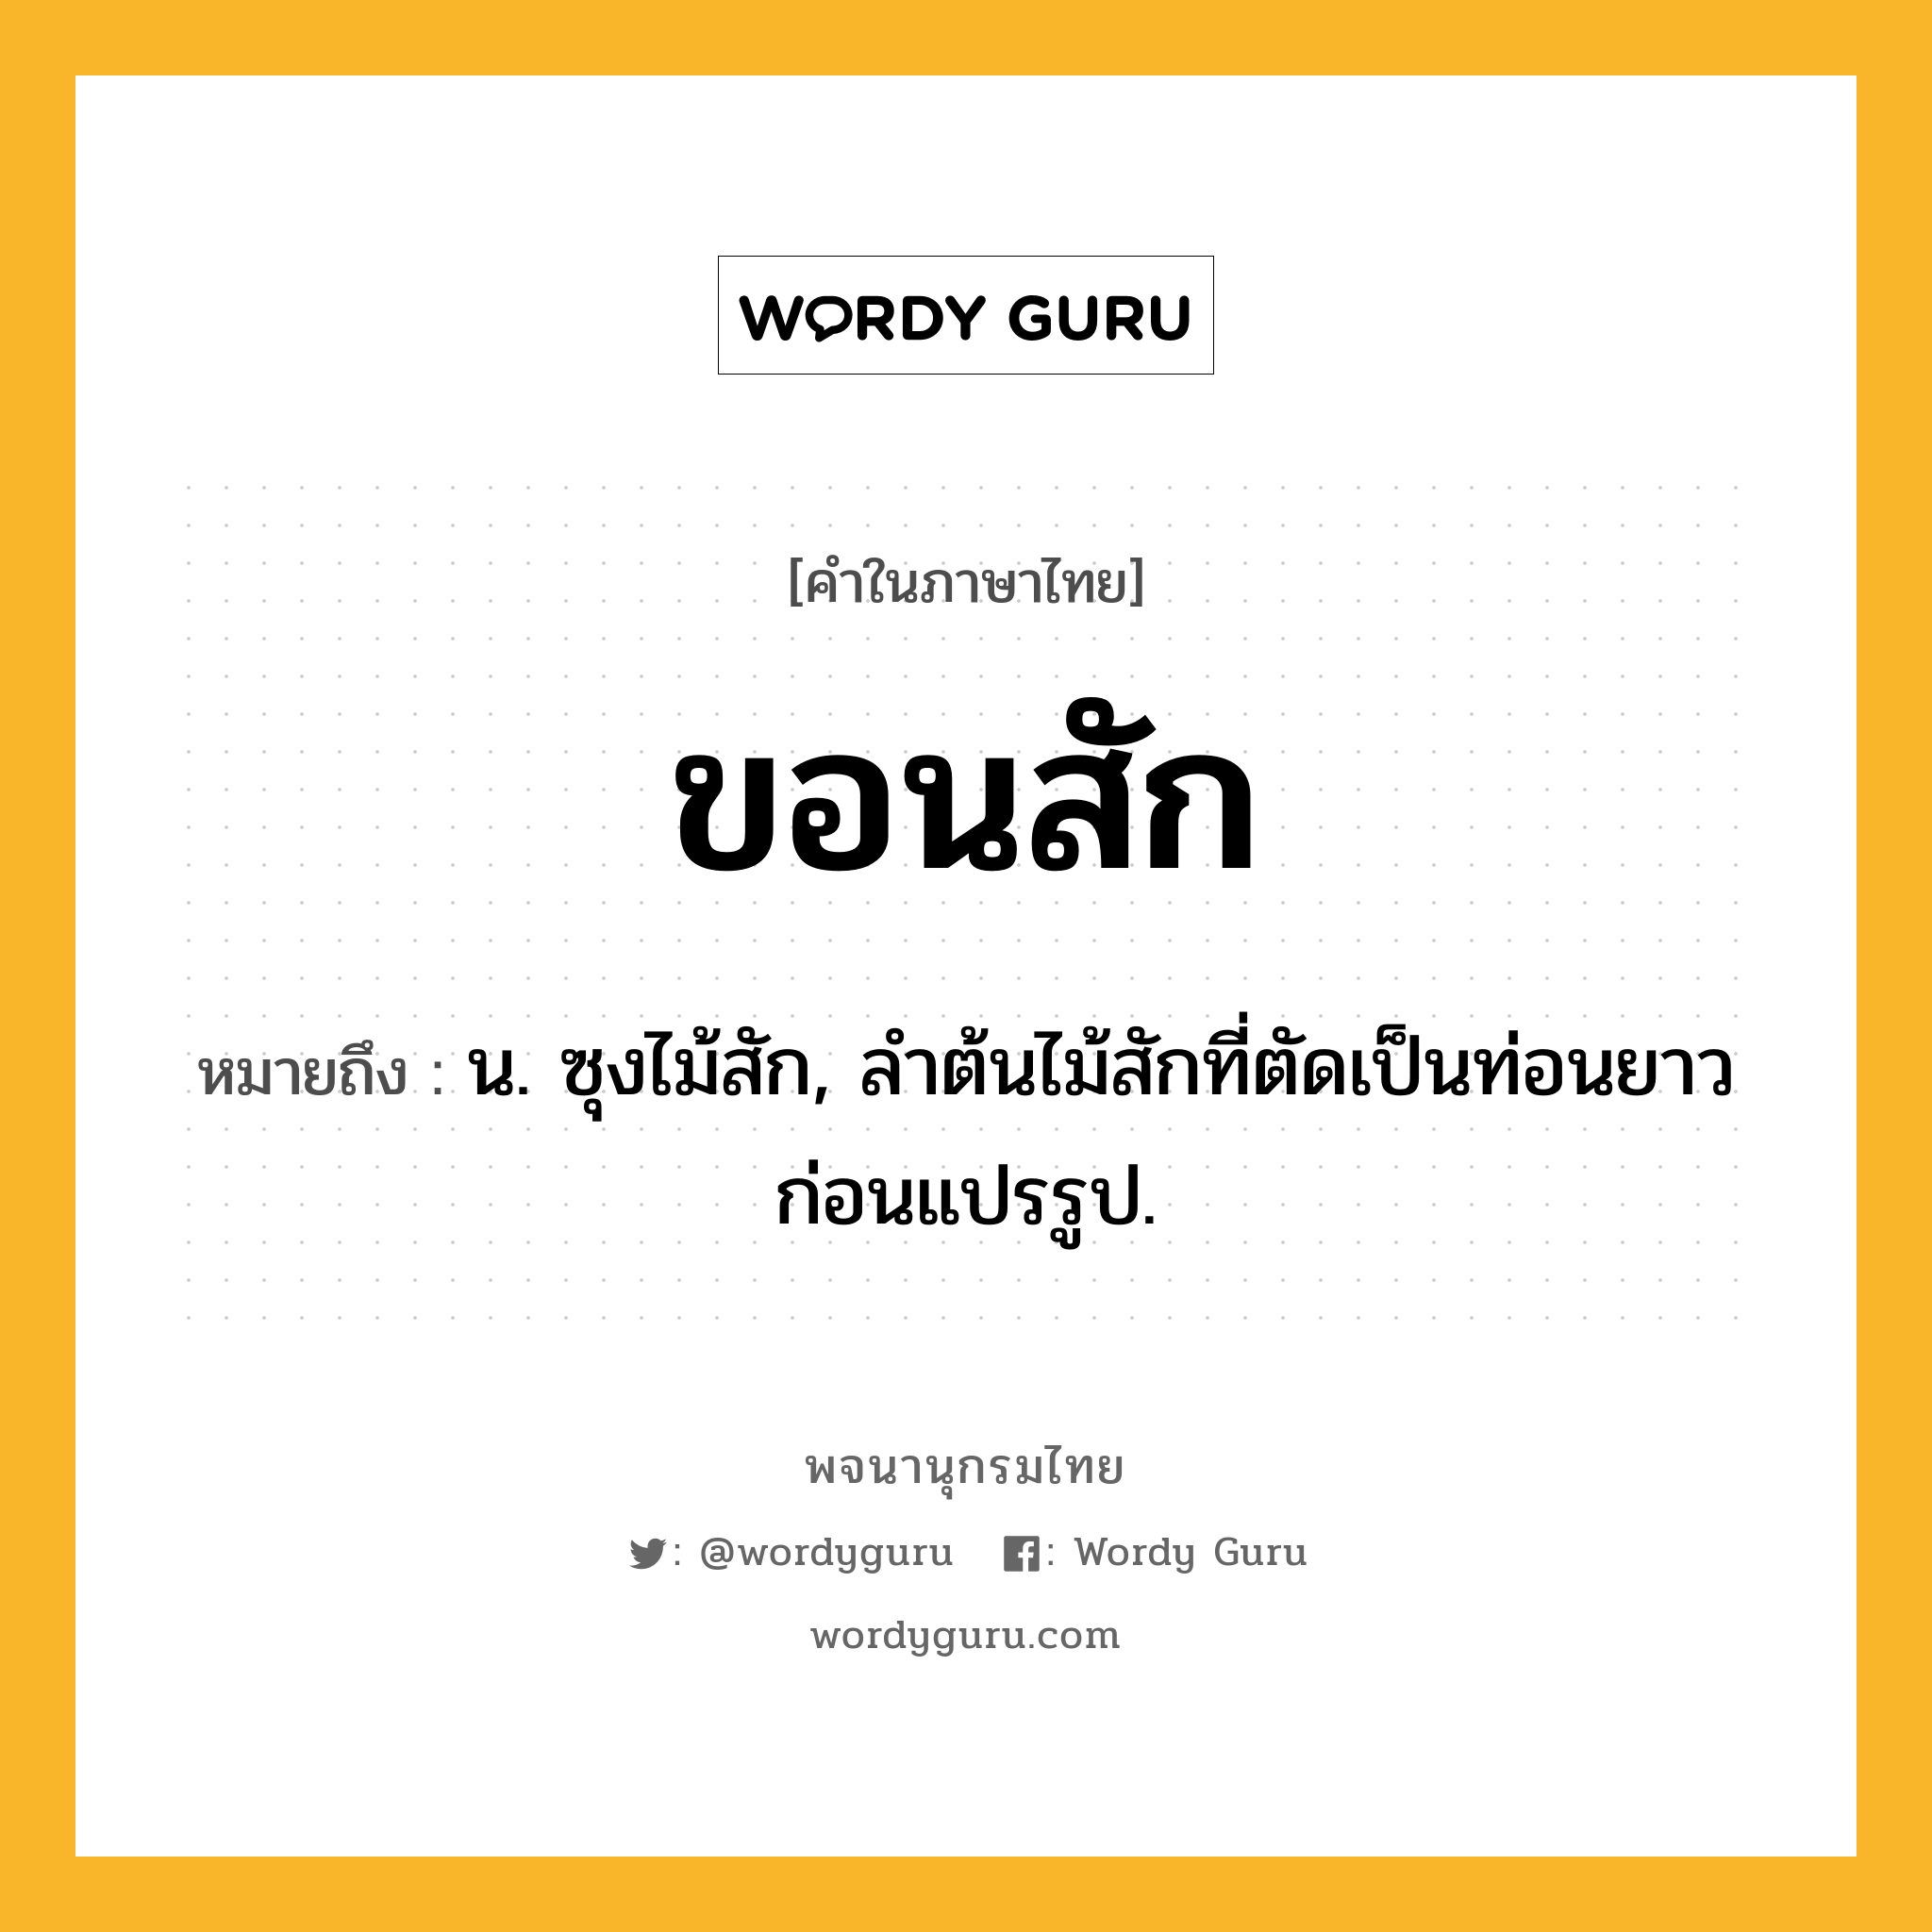 ขอนสัก ความหมาย หมายถึงอะไร?, คำในภาษาไทย ขอนสัก หมายถึง น. ซุงไม้สัก, ลำต้นไม้สักที่ตัดเป็นท่อนยาวก่อนแปรรูป.